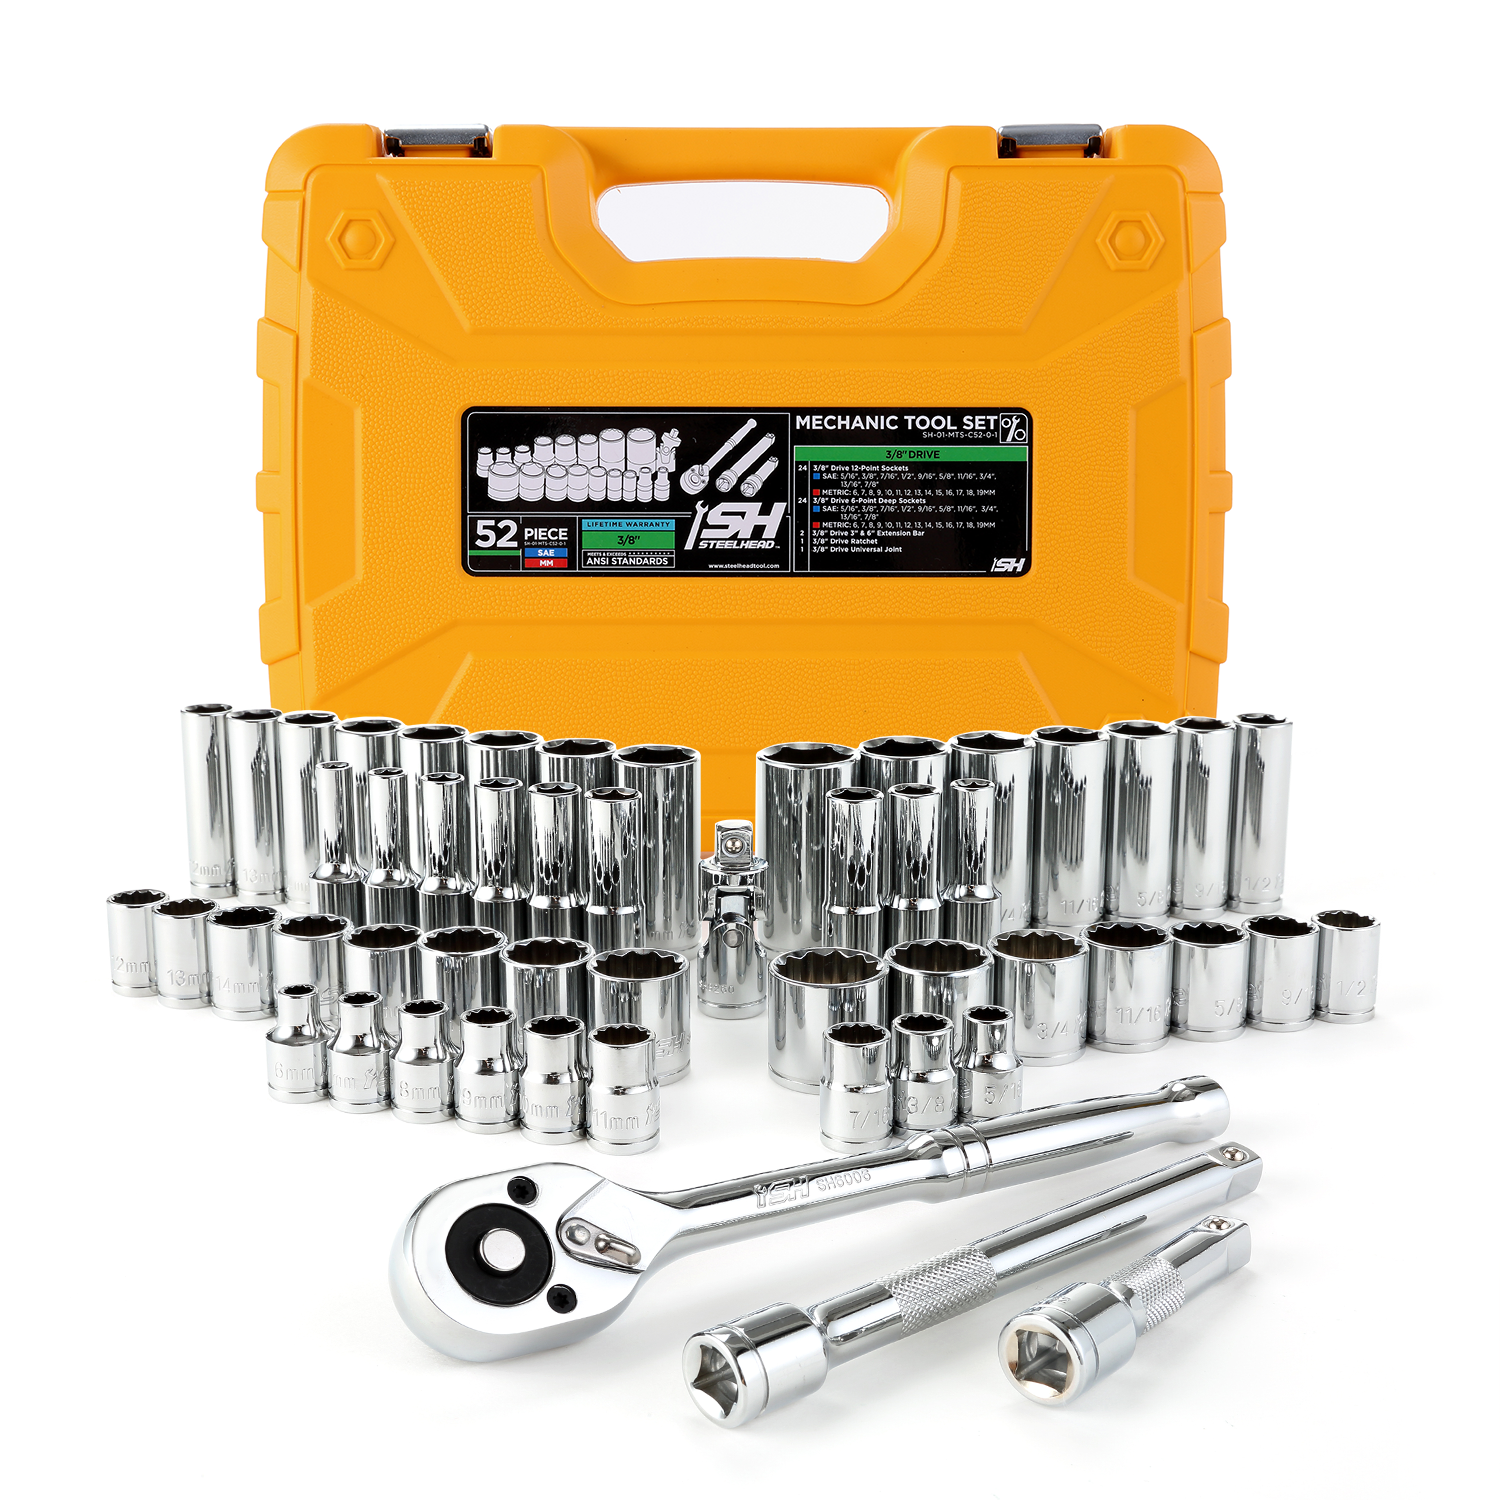 Mechanics Tool Set - ANSI (52-Piece)-Motorhead & Steelhead Tools